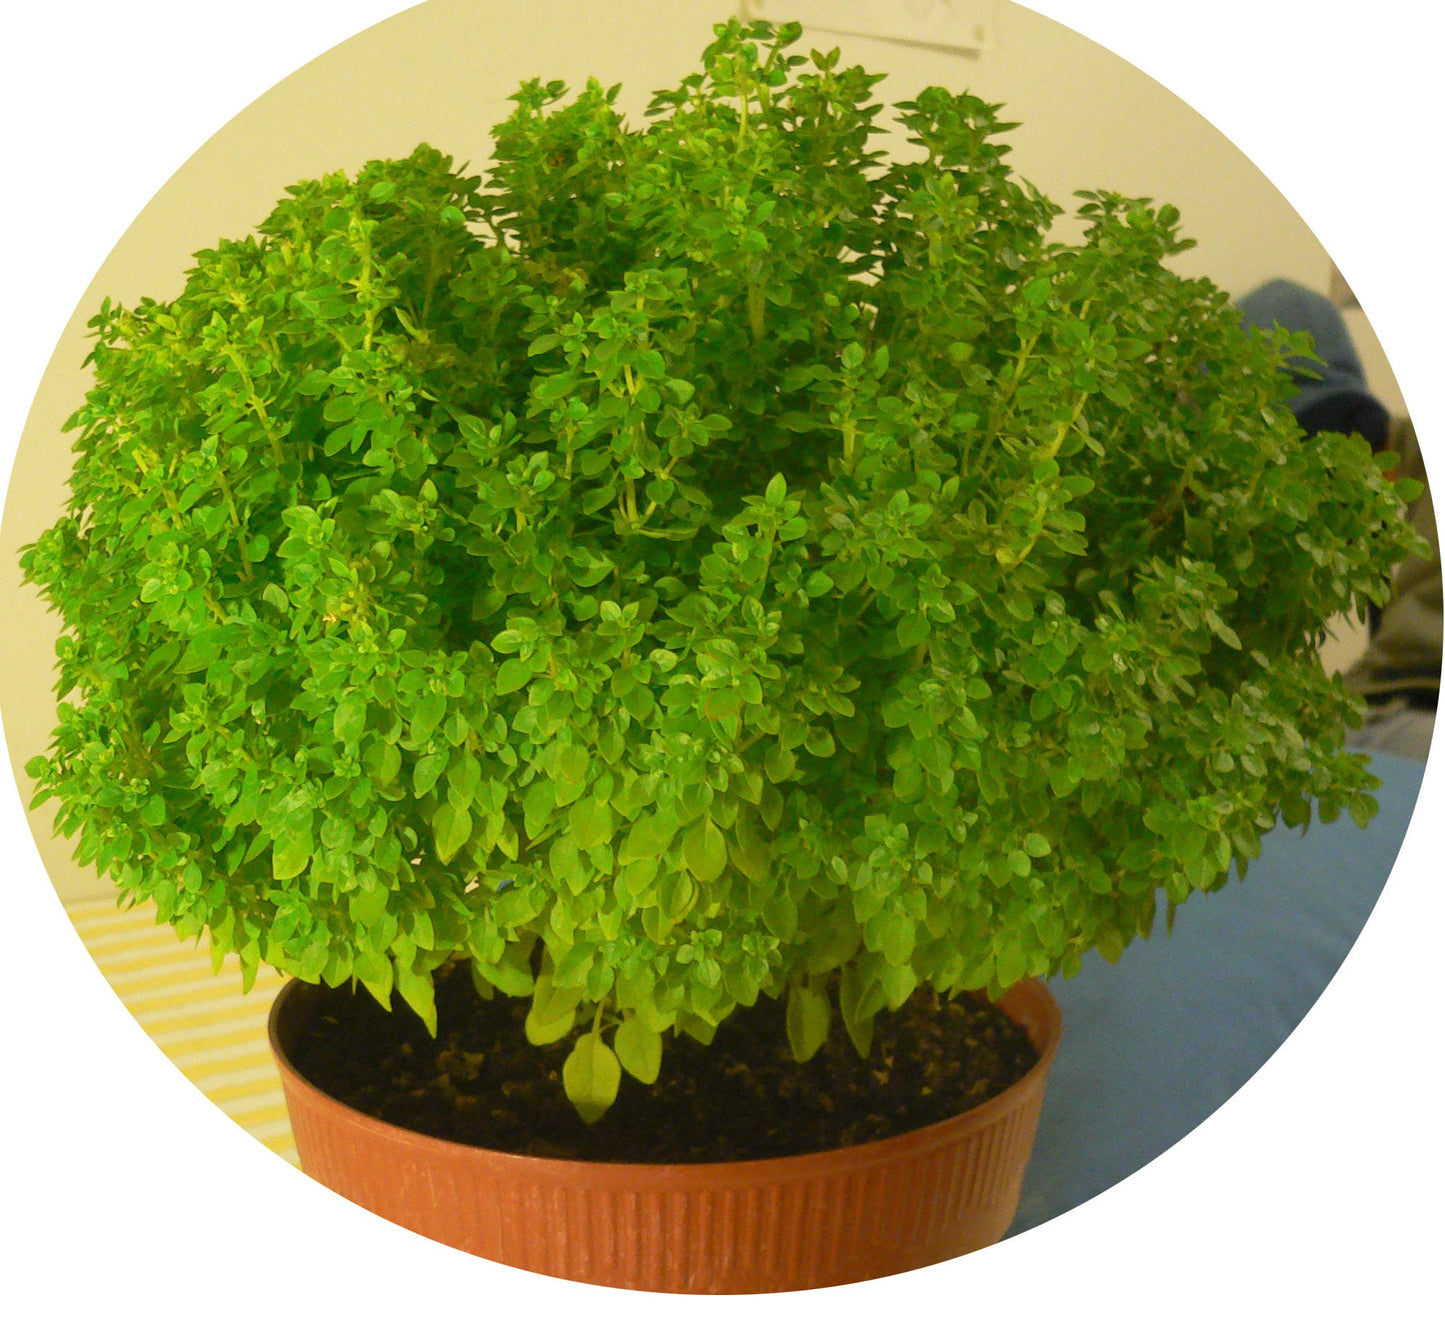 500 DWARF GREEK BASIL Ocimum Basilicum Fragrant Spicy Small Bright Green Leaf Herb Seeds